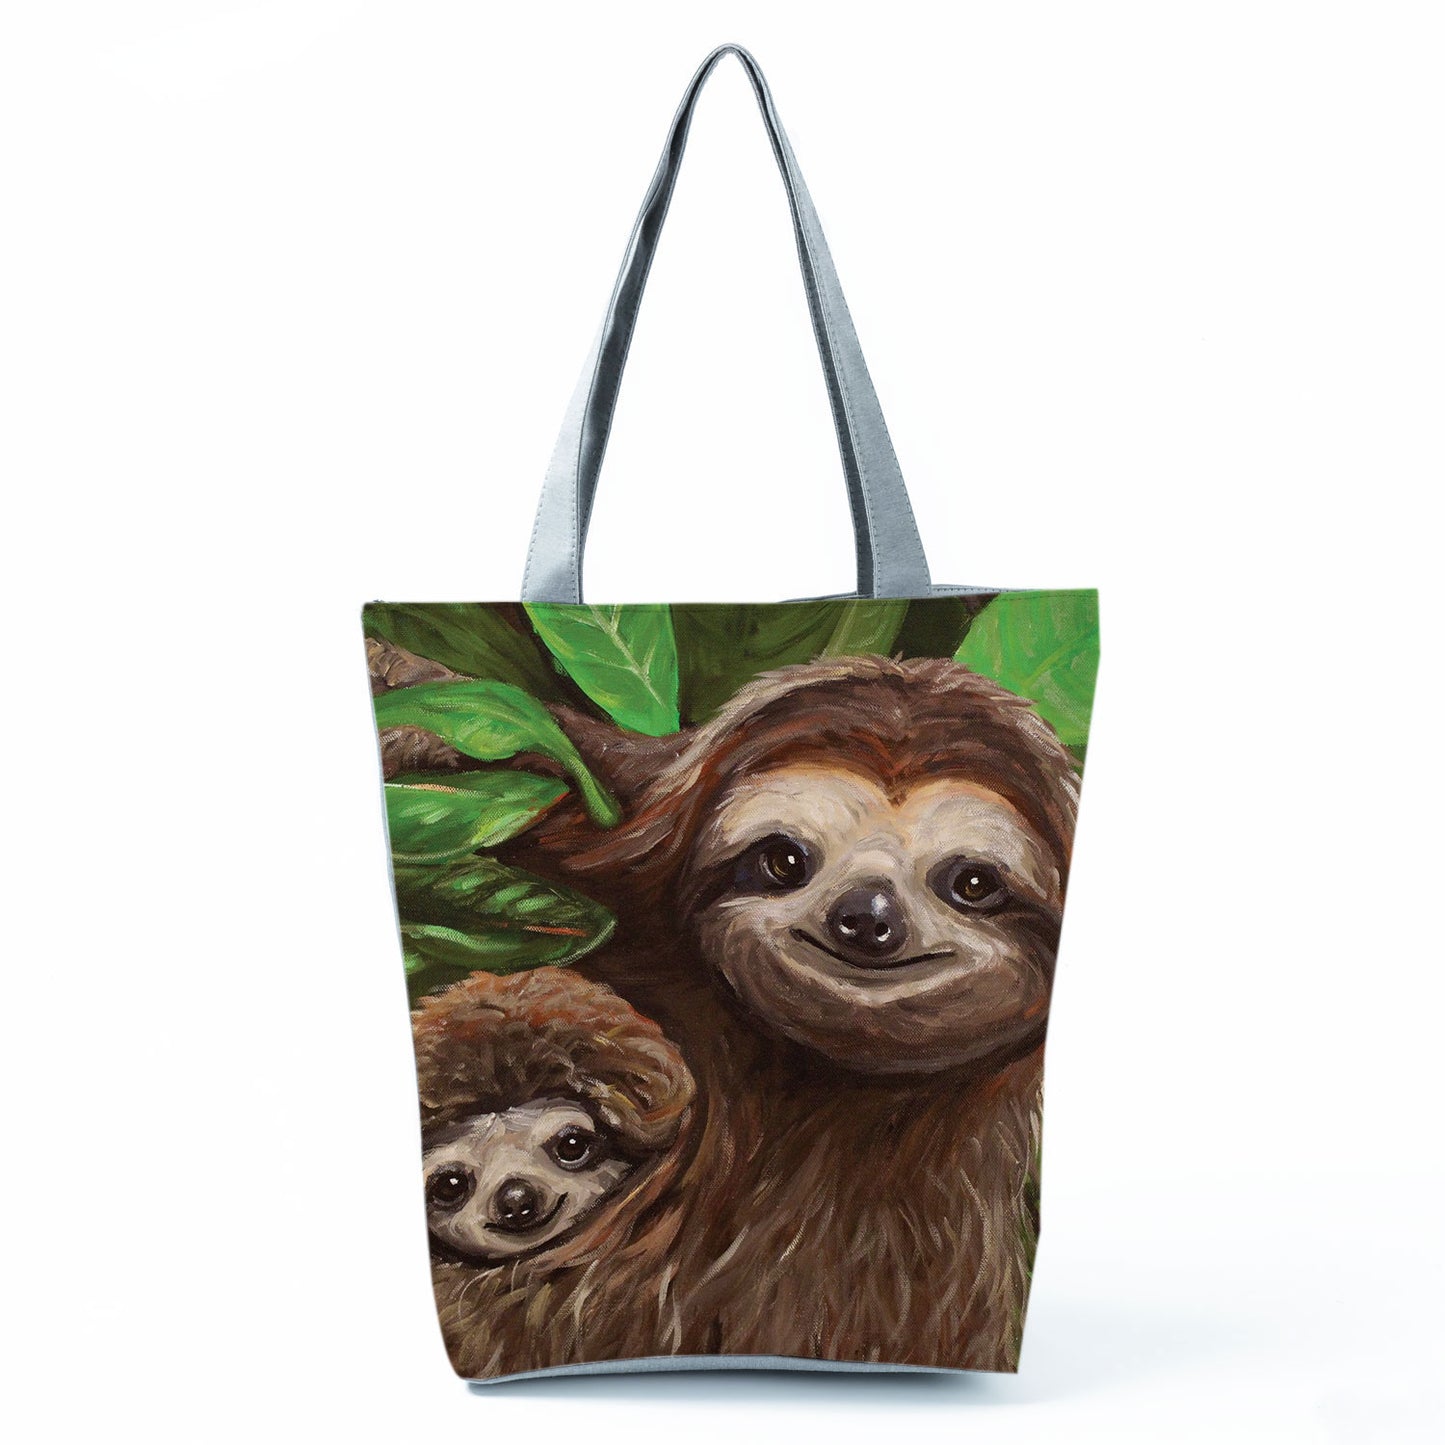 Mom and Baby Sloth Tote Bag